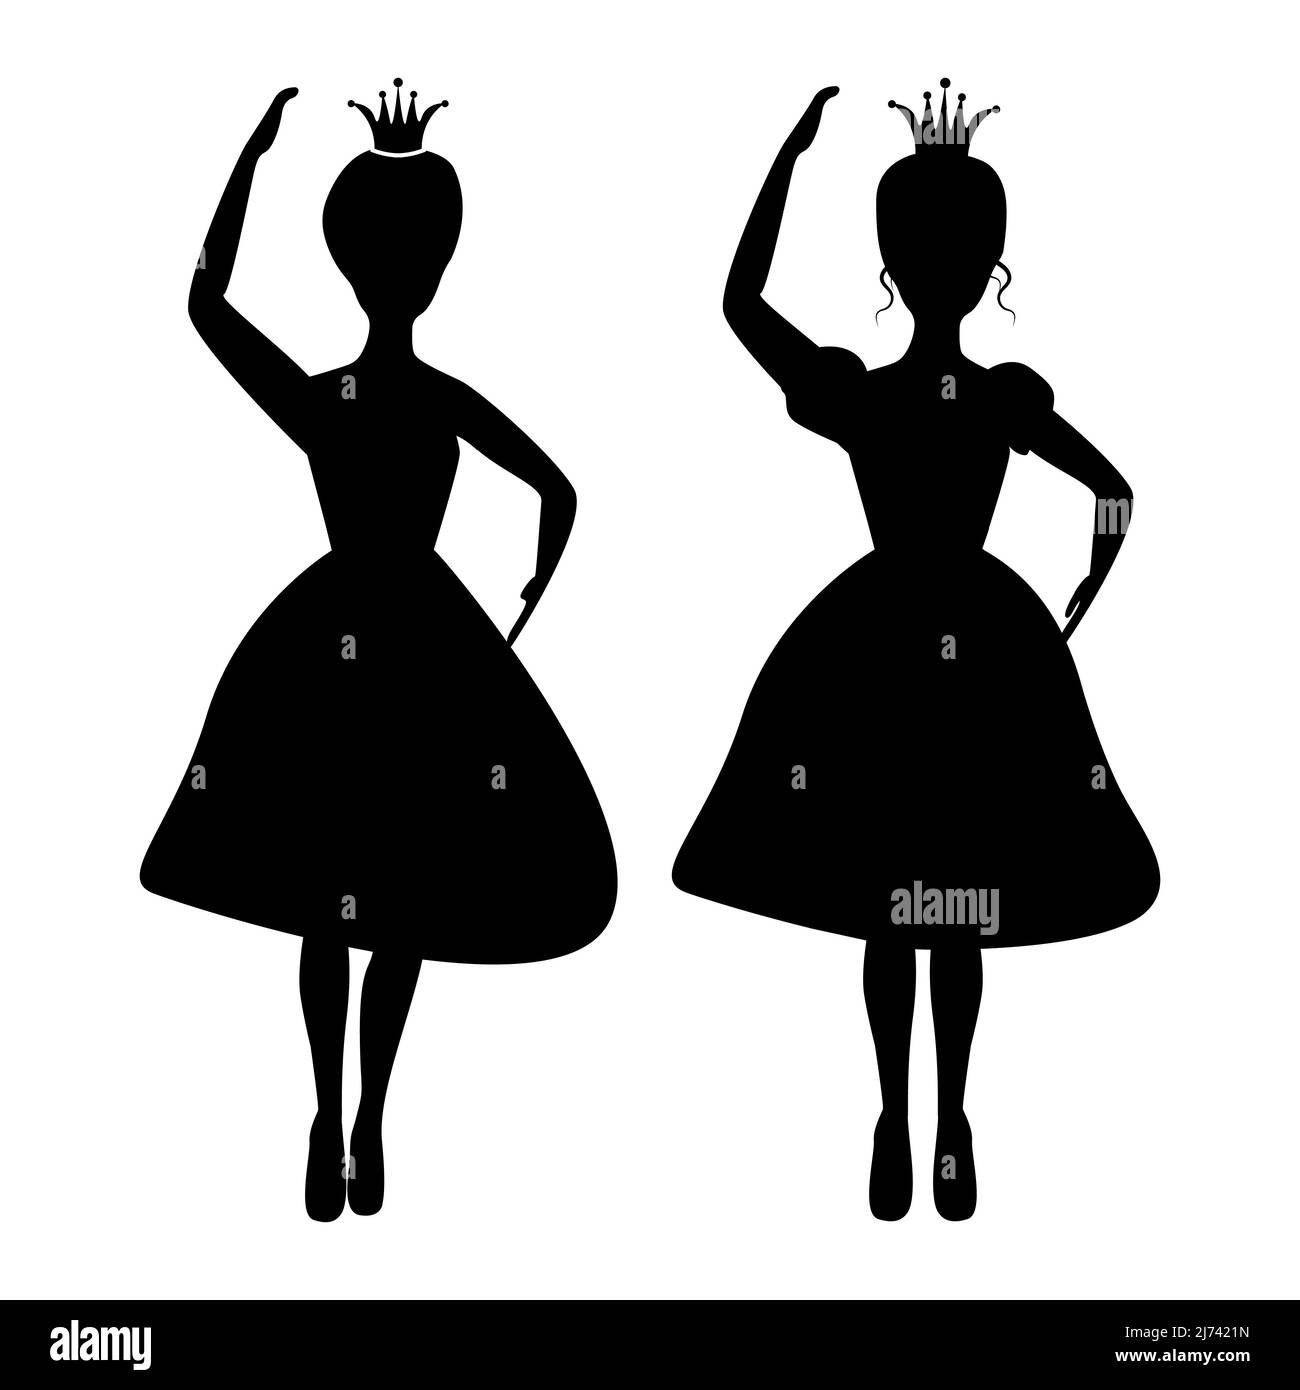 Principessa ballante isolata e silhouette regina su sfondo bianco. Disegno di illustrazione di racconto di fata. Illustrazione Vettoriale